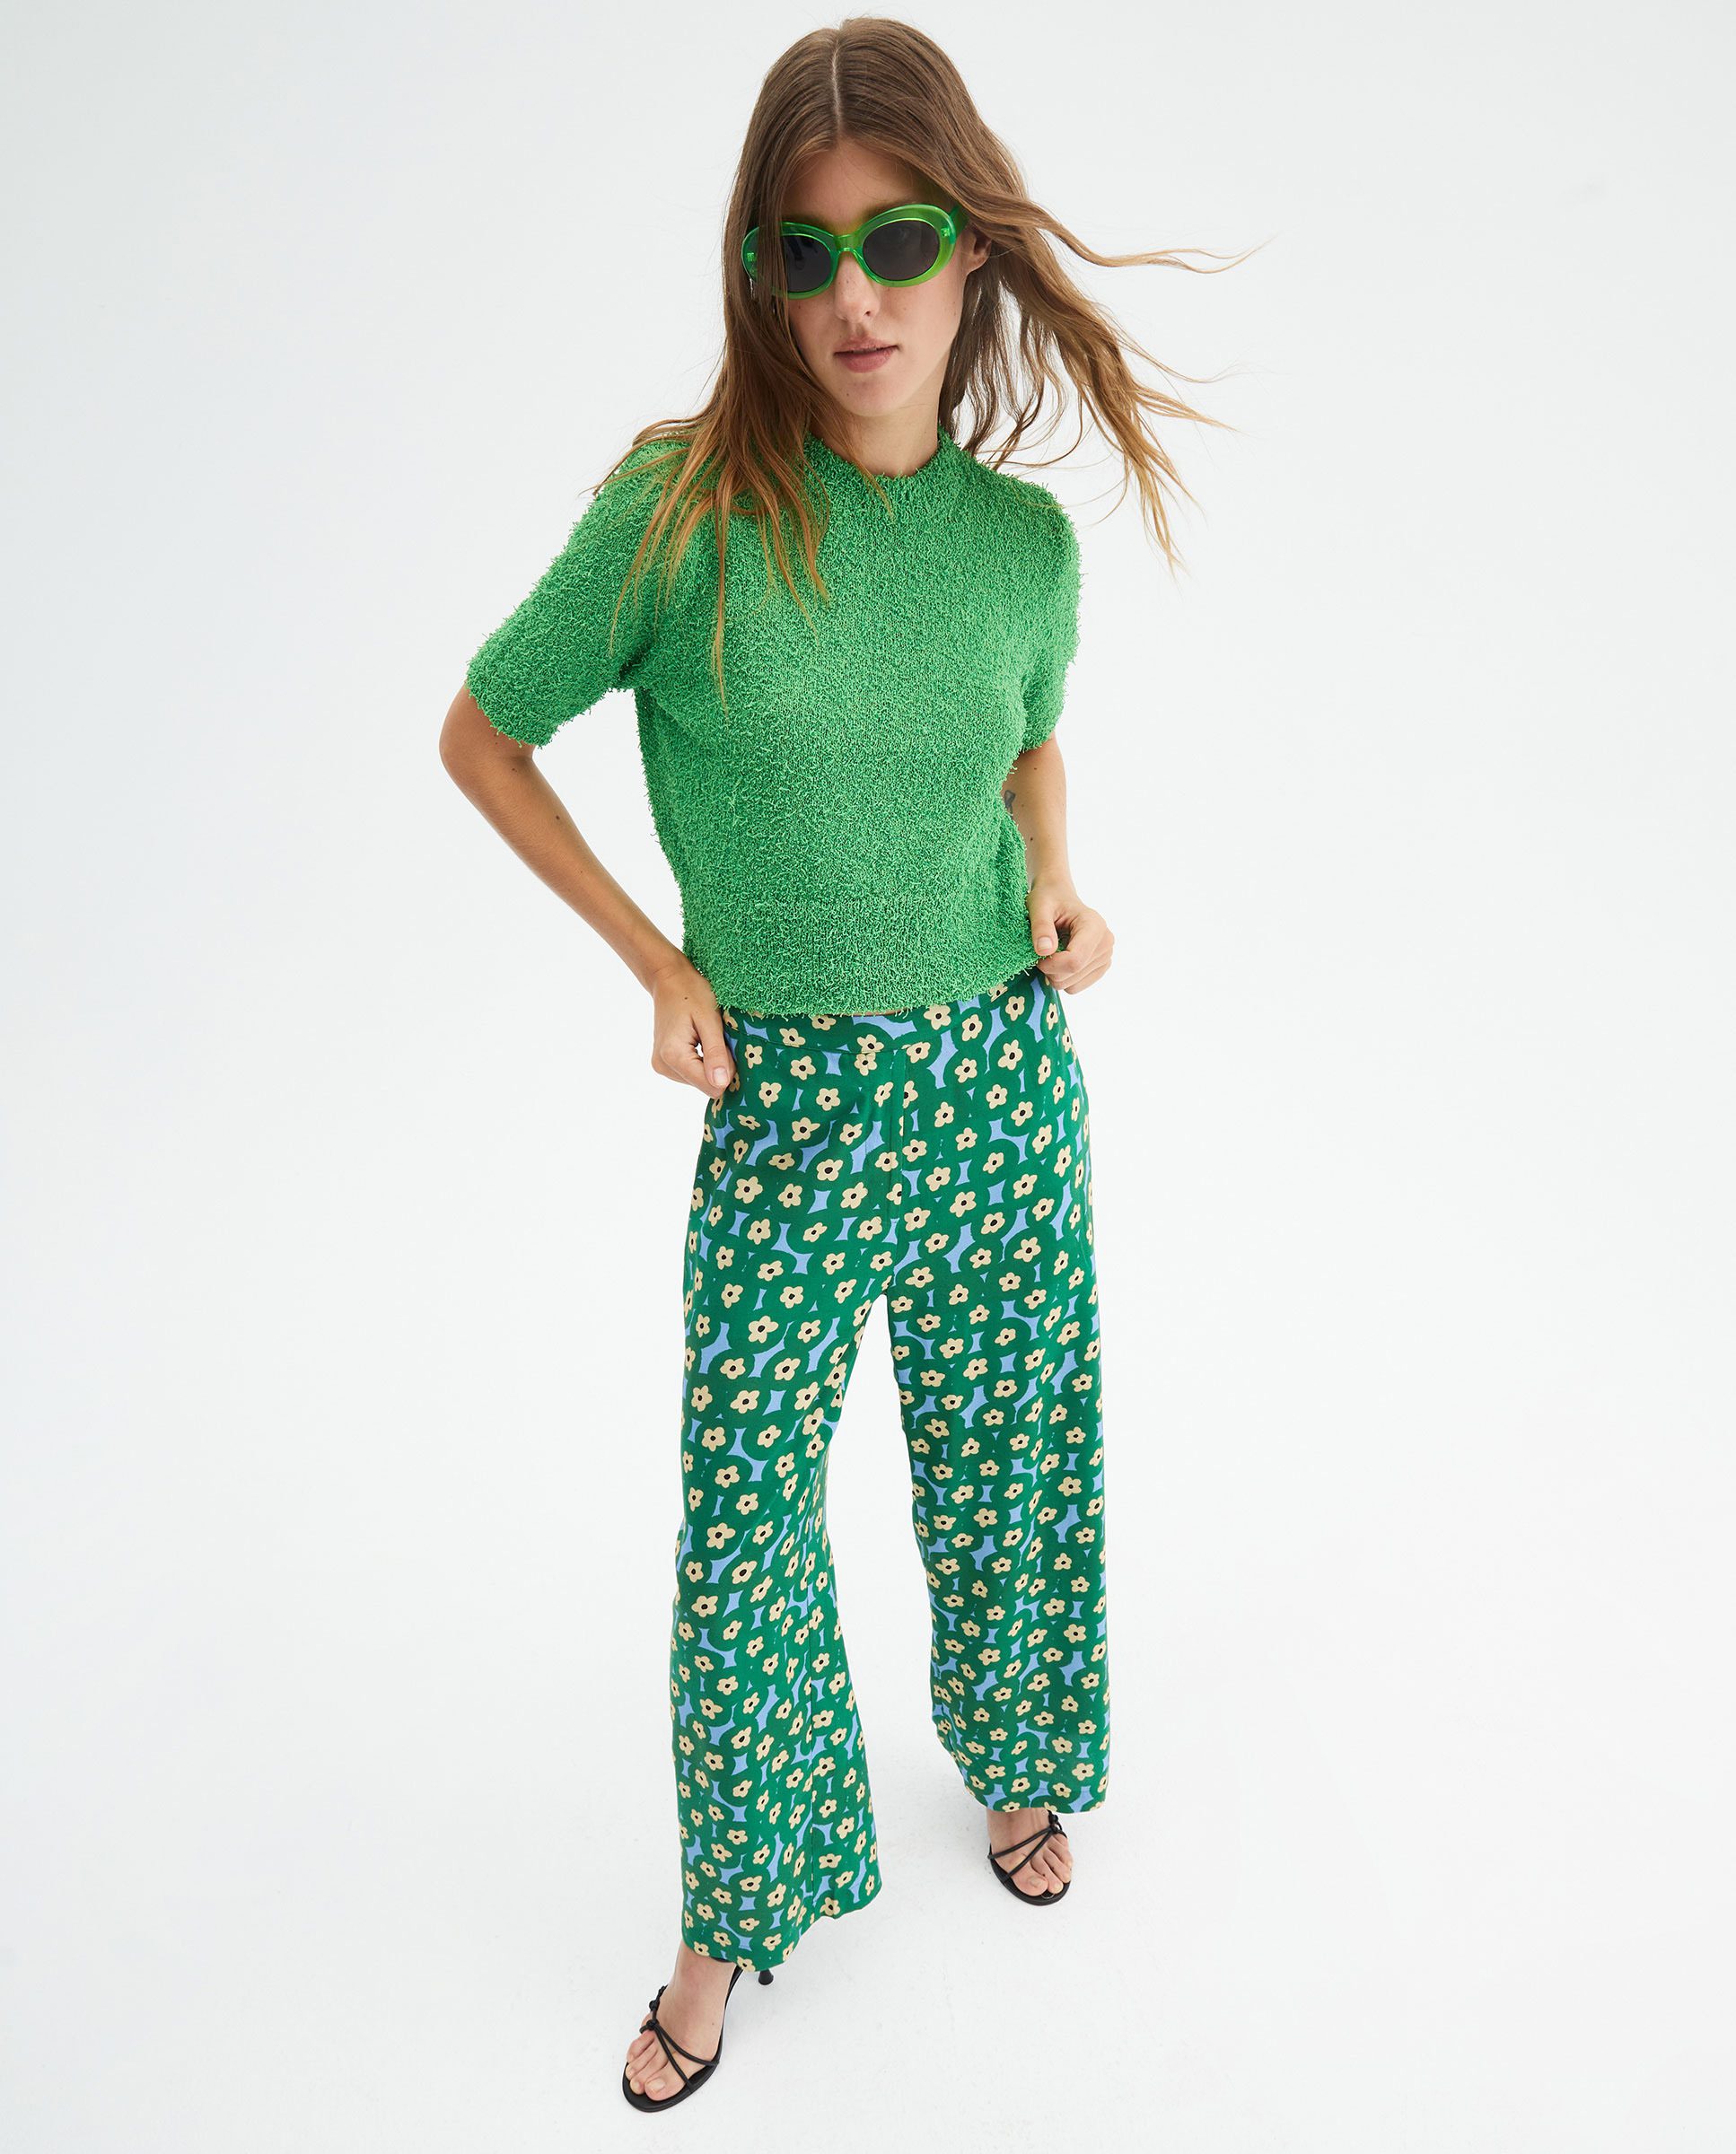 Πράσινο Παντελόνι Σε Ίσια Γραμμή Με Print Λουλούδια Compania Fantastica